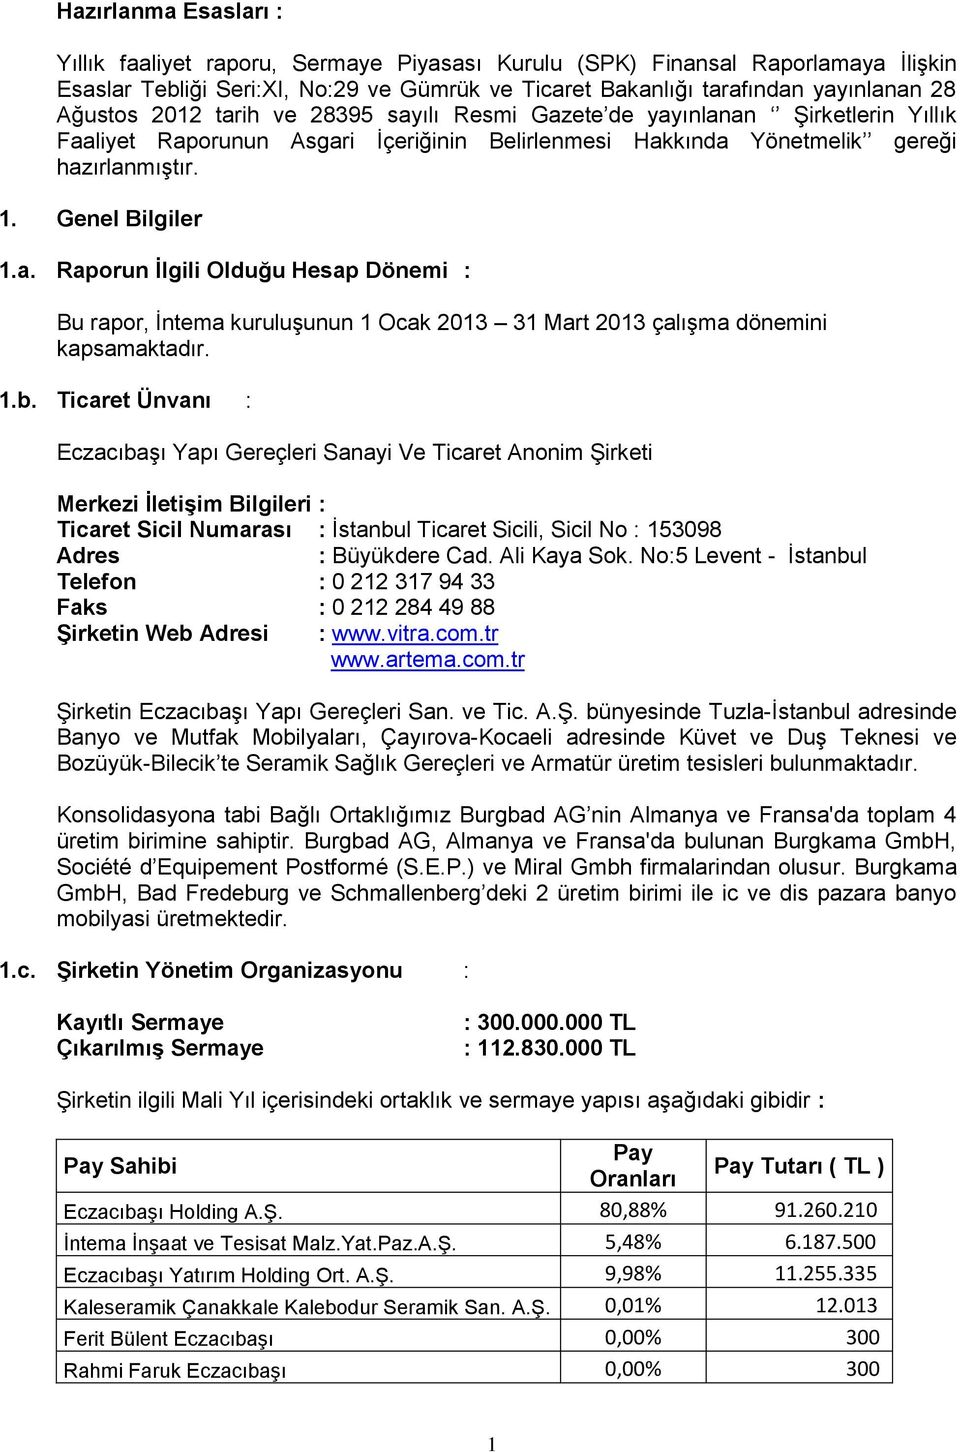 1.b. Ticaret Ünvanı : Eczacıbaşı Yapı Gereçleri Sanayi Ve Ticaret Anonim Şirketi Merkezi İletişim Bilgileri : Ticaret Sicil Numarası : İstanbul Ticaret Sicili, Sicil No : 153098 Adres : Büyükdere Cad.